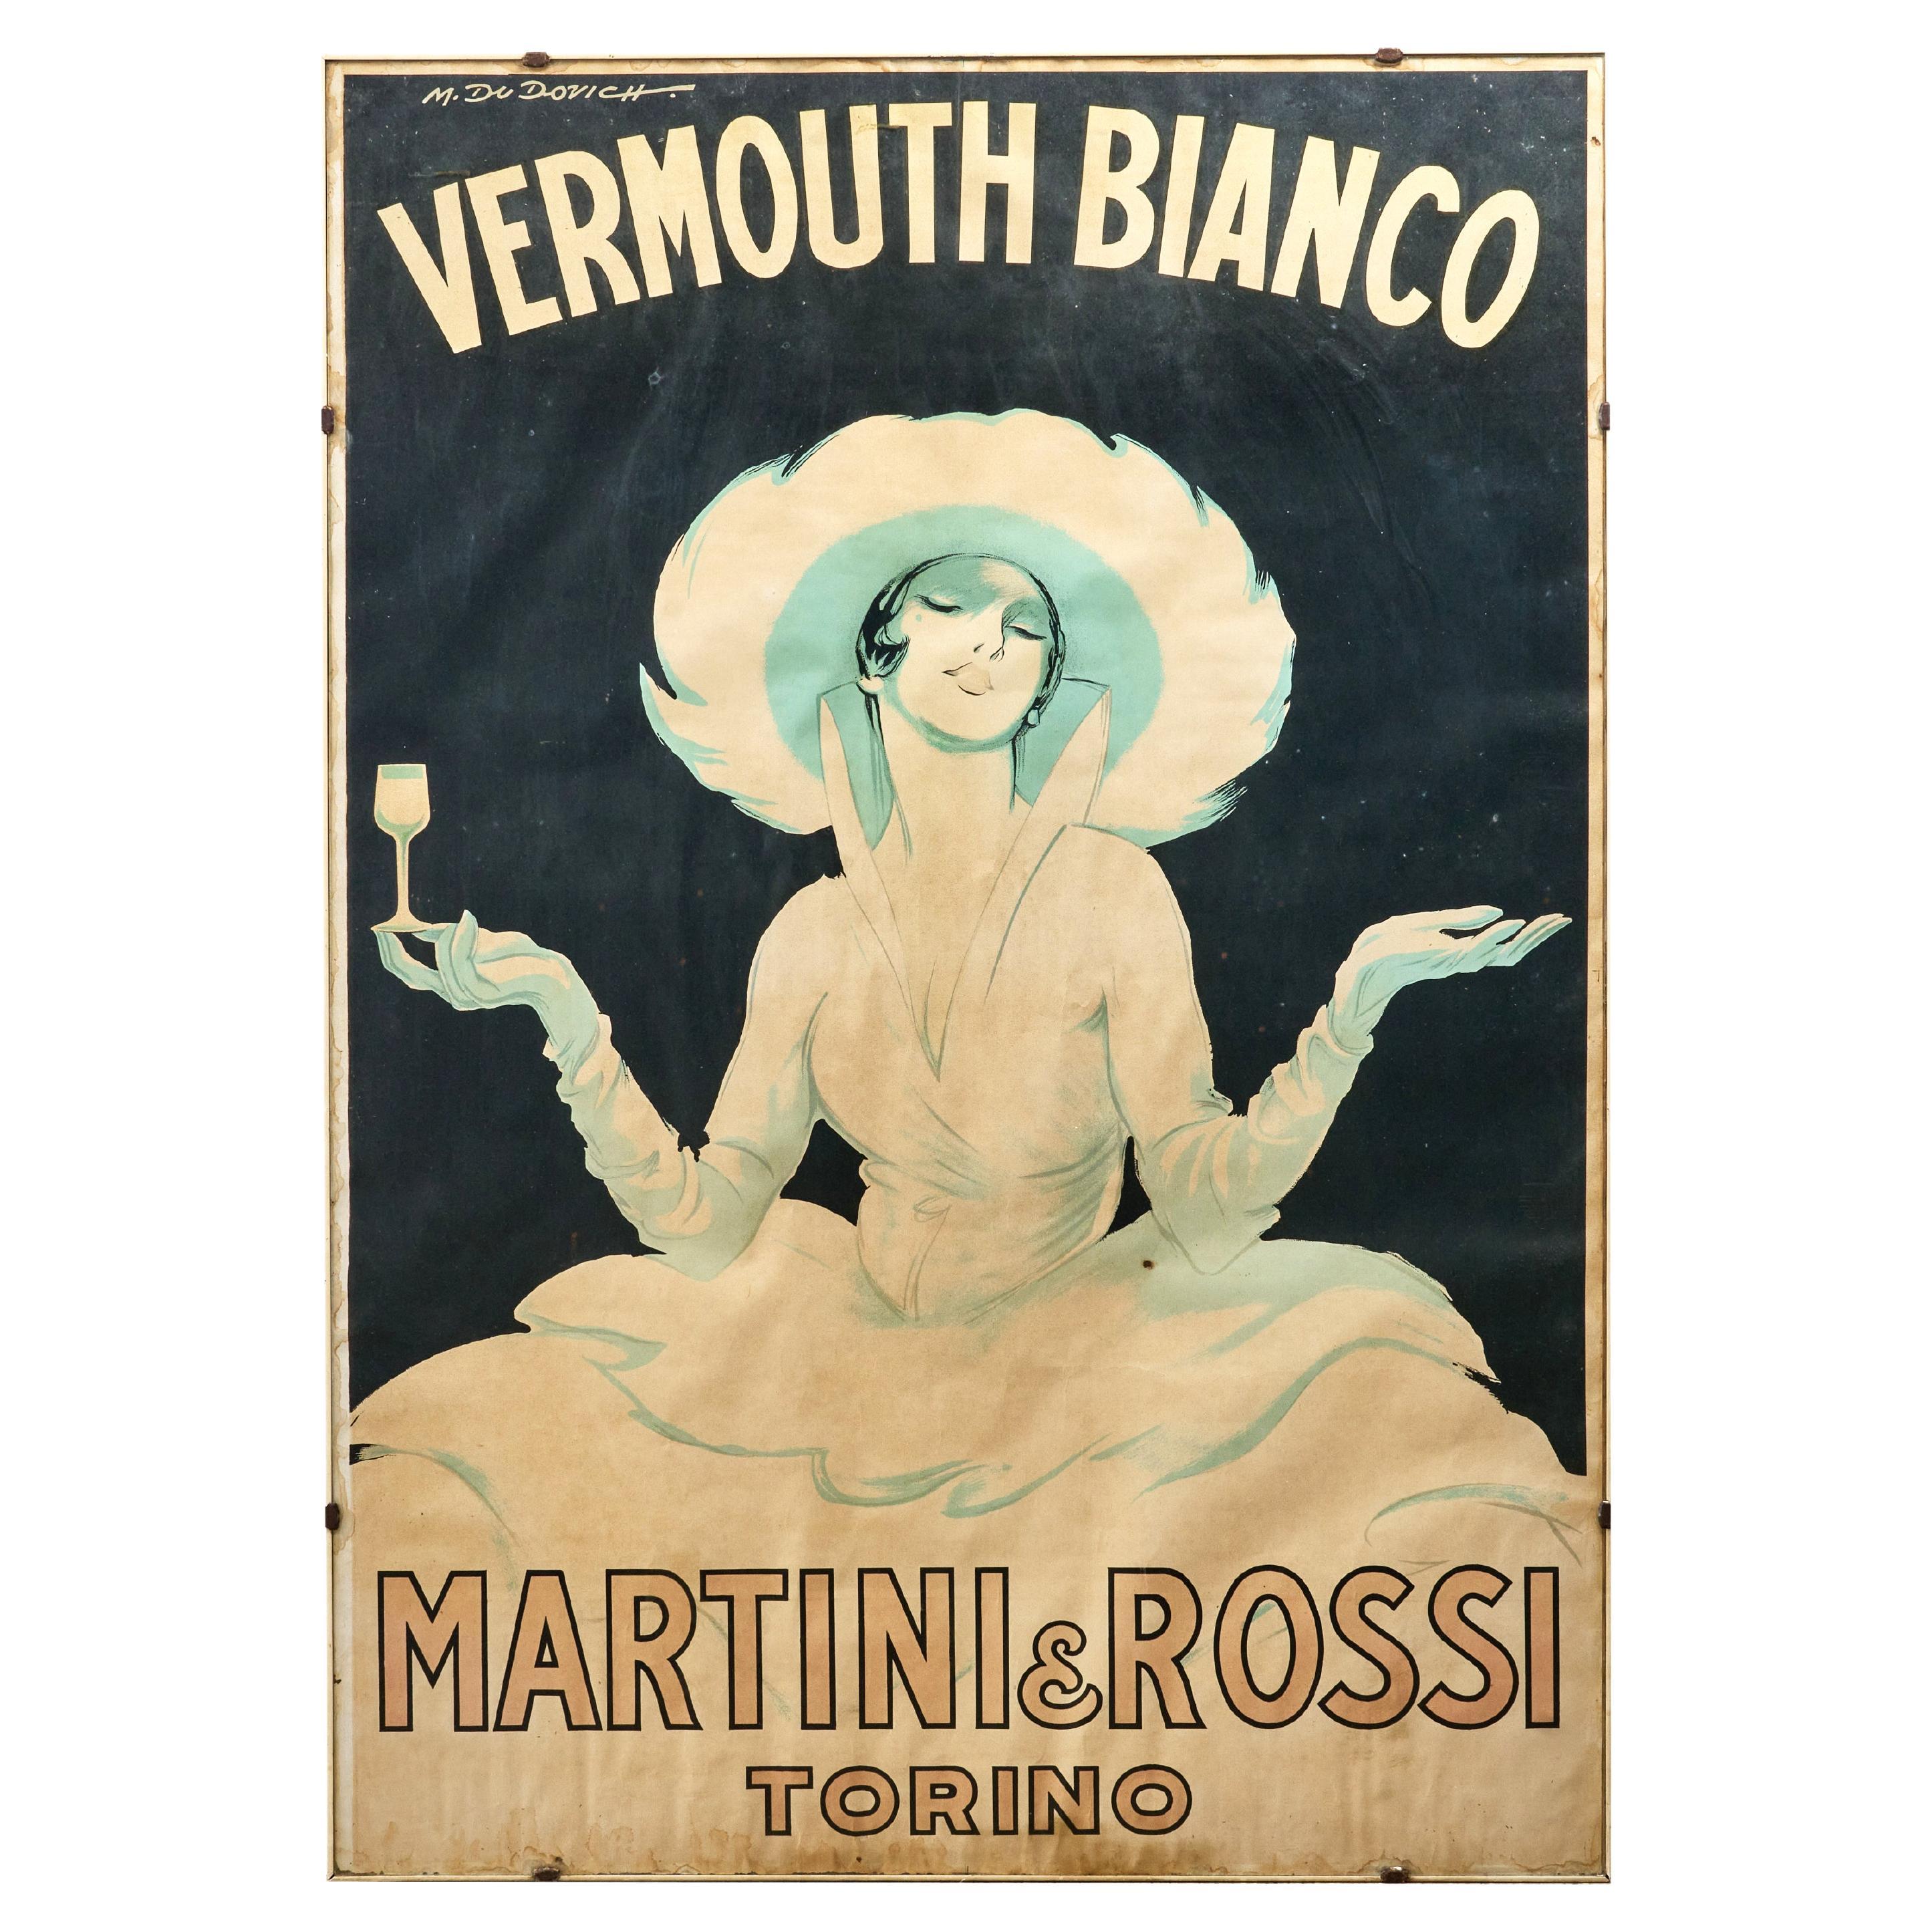 Gerahmtes Original-Werbeplakat für Martini und Rossi Vermouth, signiert